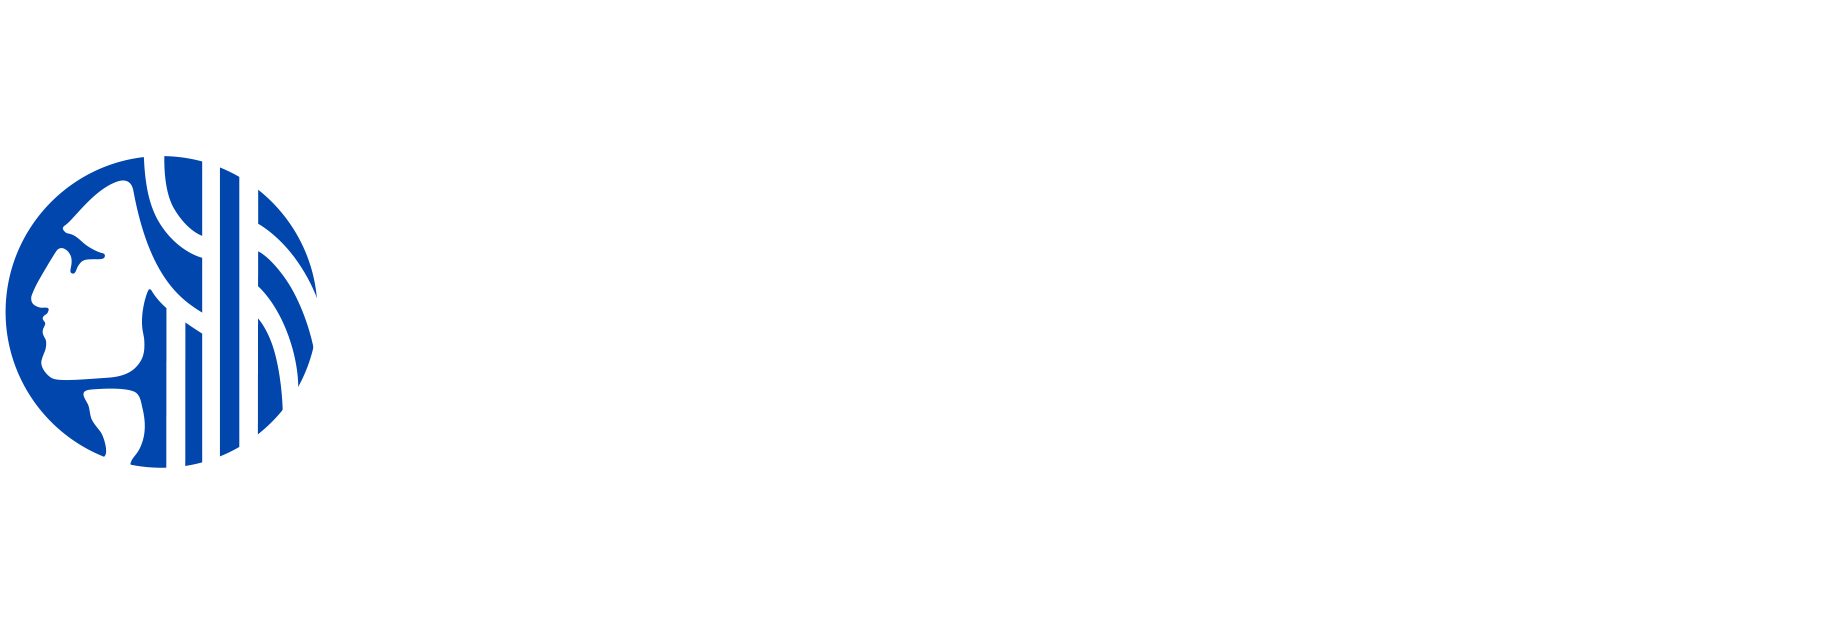 Logotipo de la ciudad de Seattle